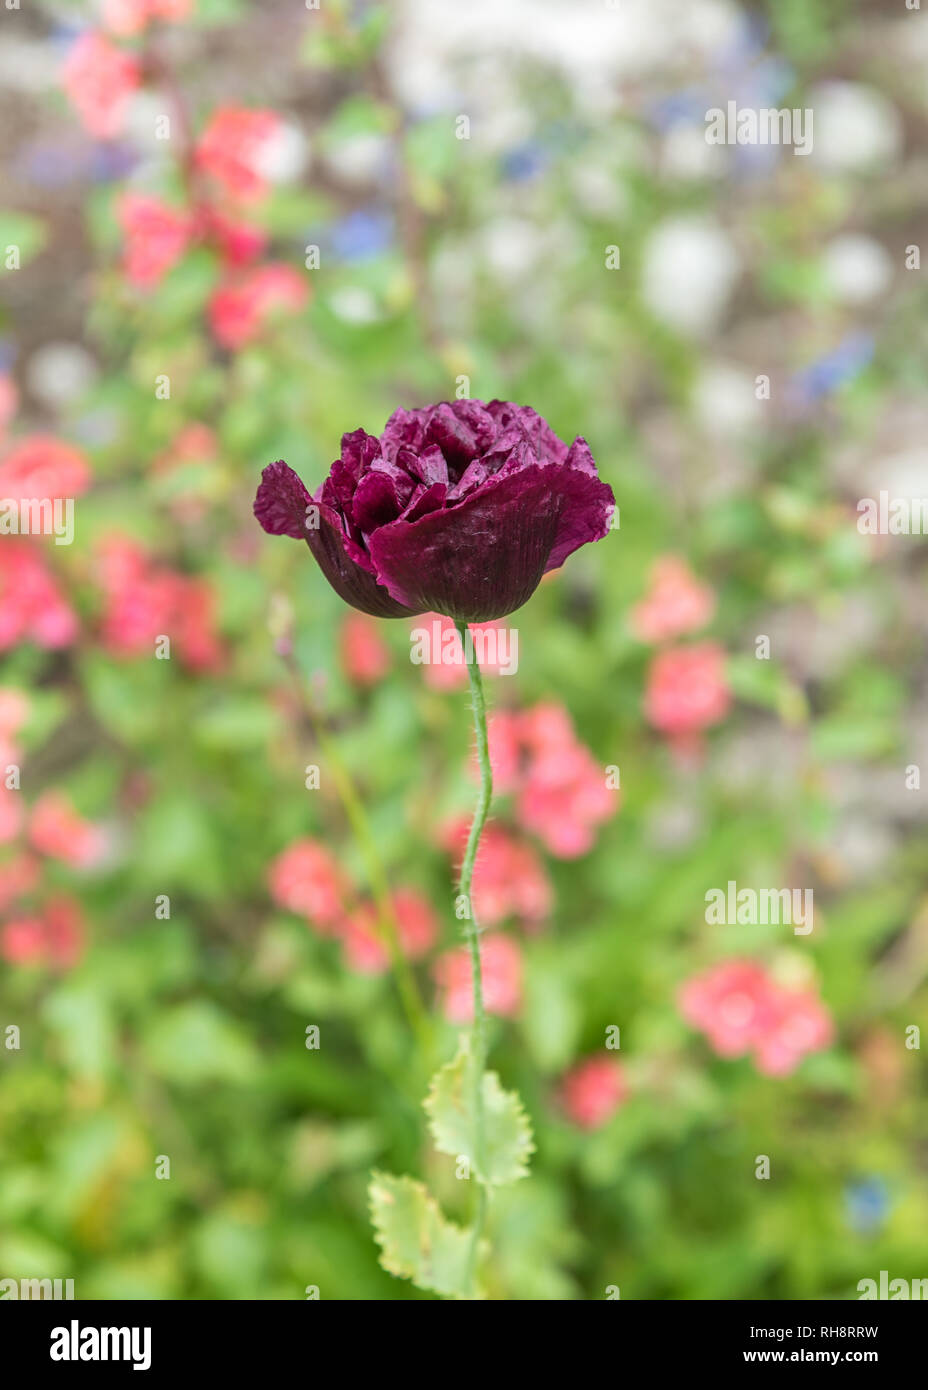 Solo morado oscuro, casi negro de adormidera. El negro Peony amapola son atractivas plantas con flores de seda con flores dobles. Retrato. Foto de stock